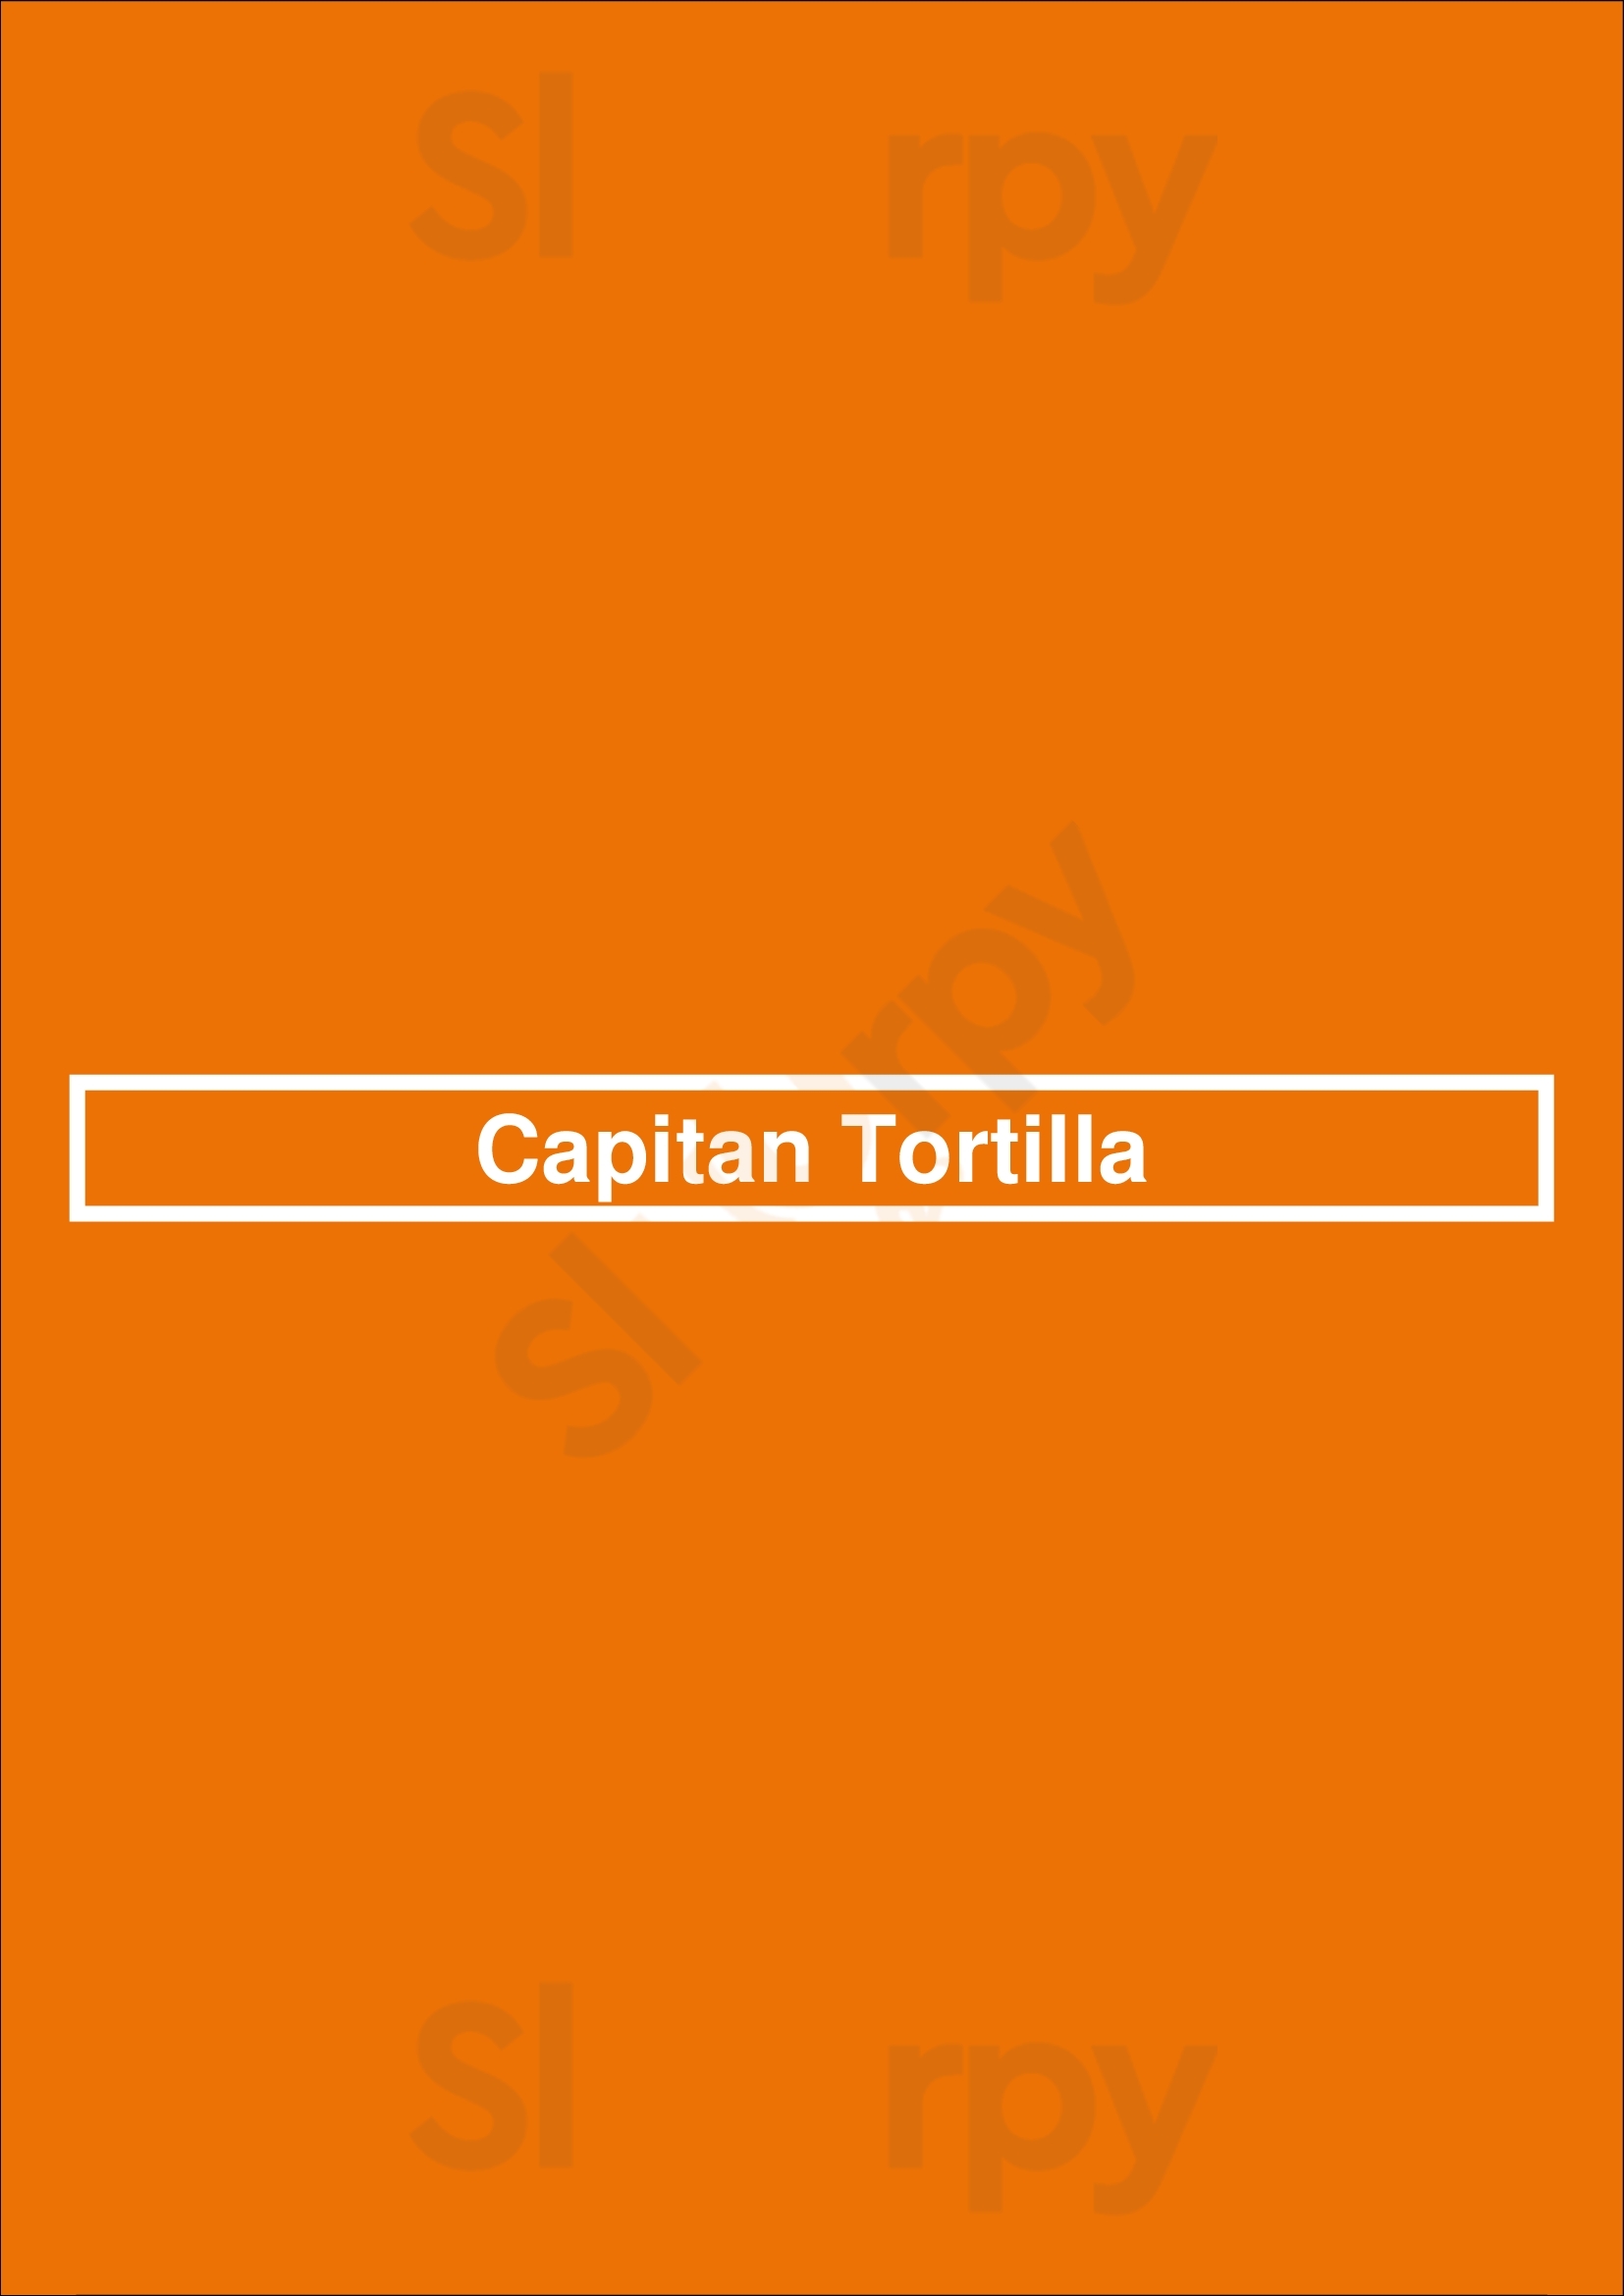 Capitan Tortilla London Menu - 1